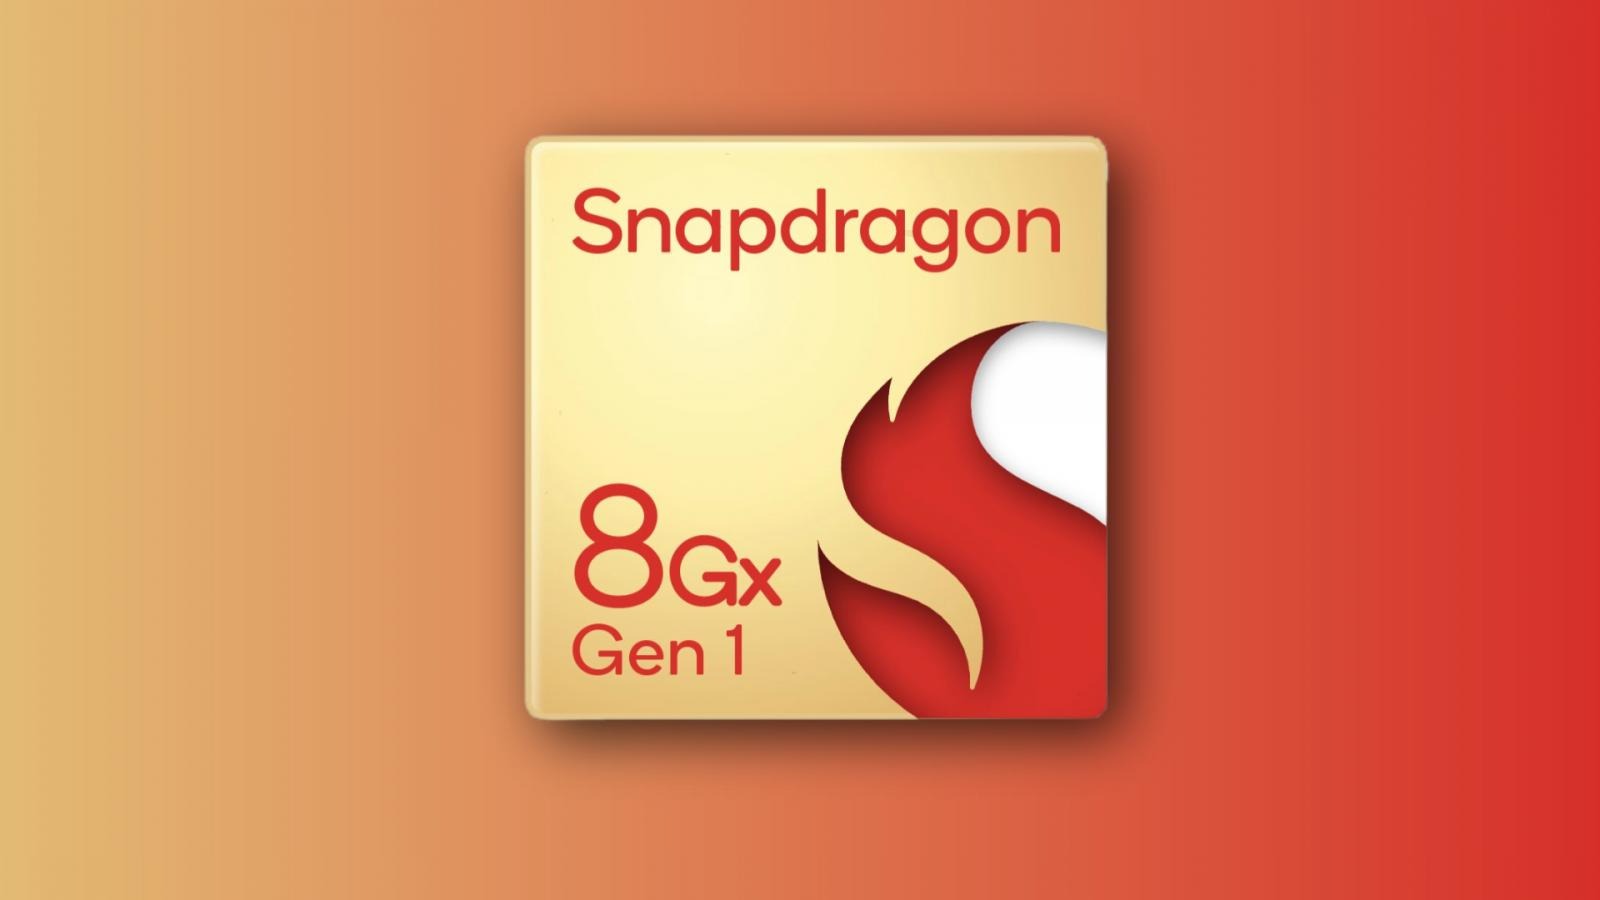 Snapdragon 8Gz Gen 1 leaked chip